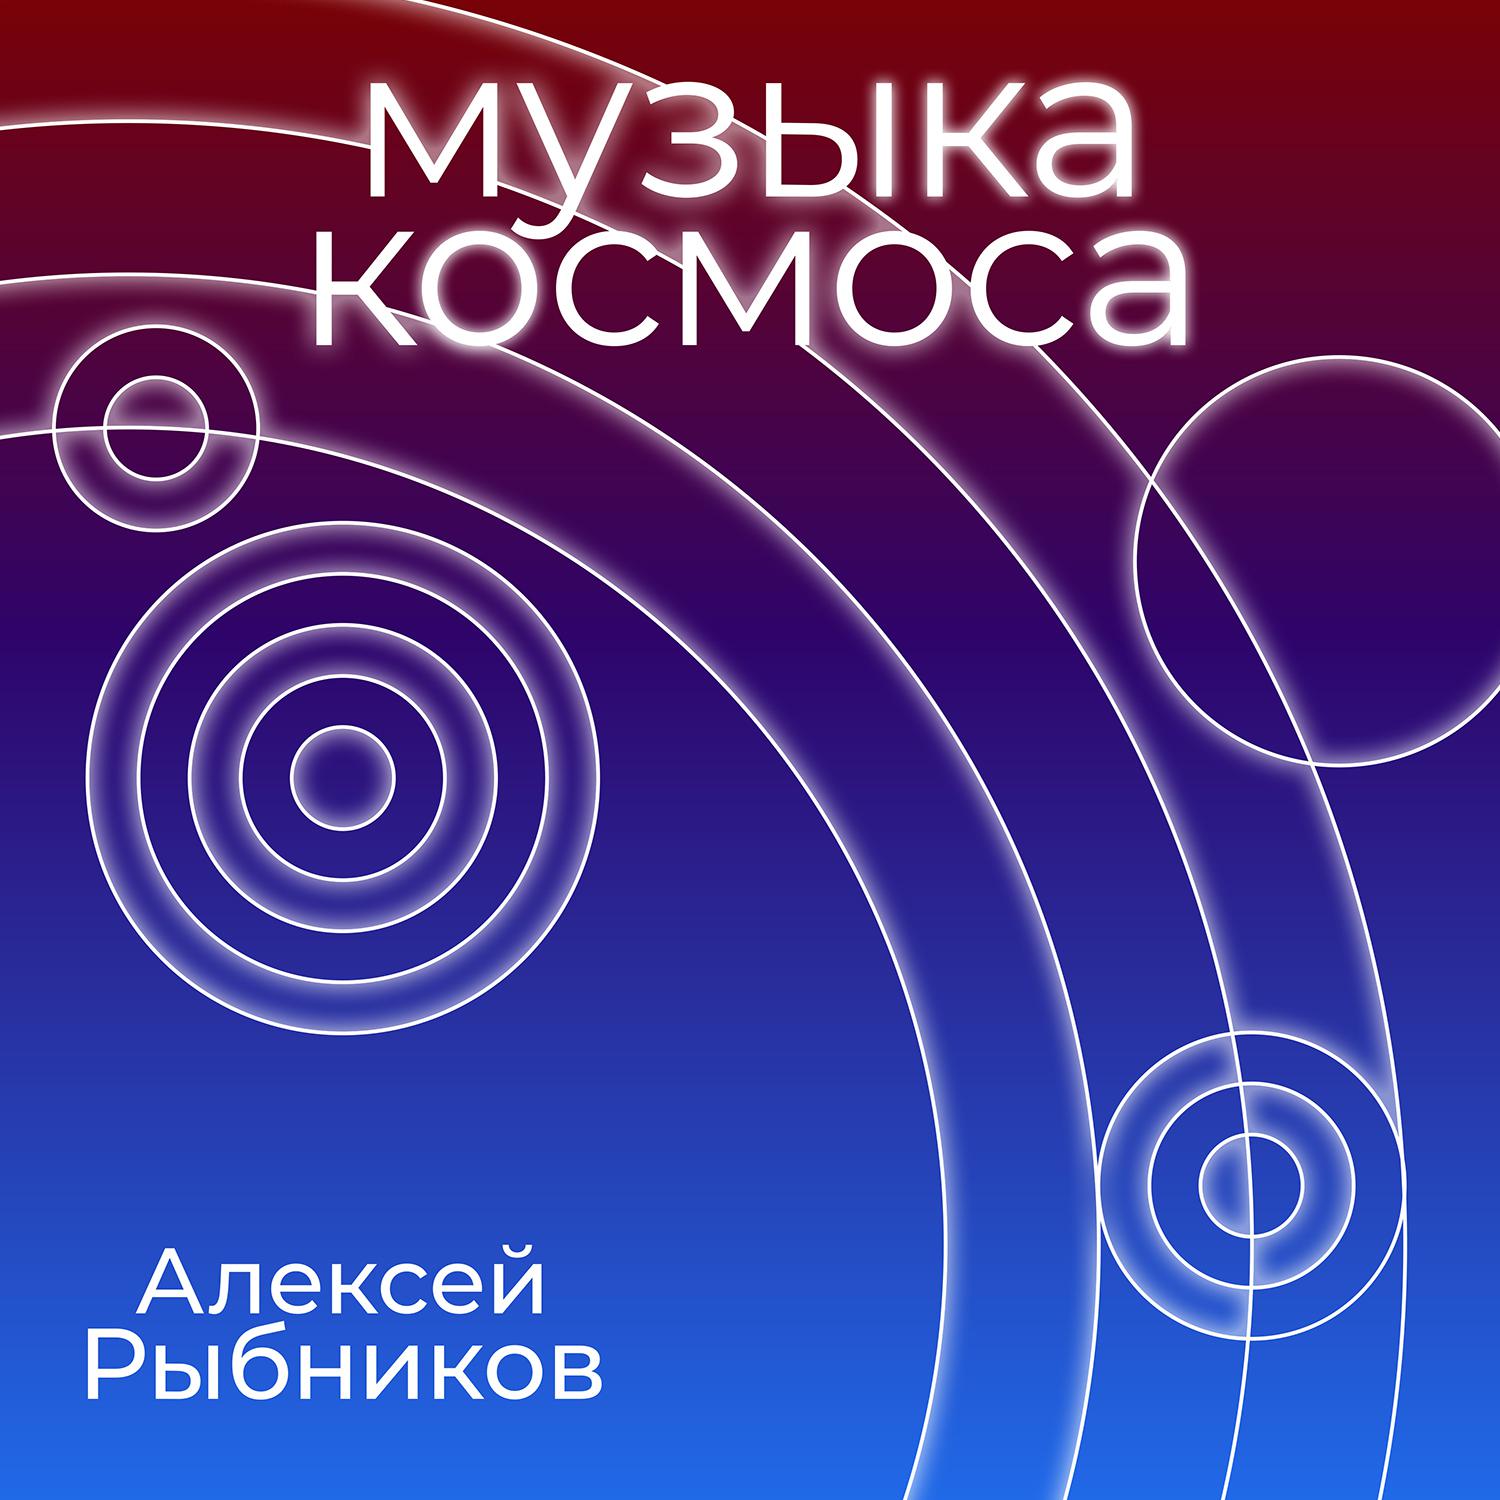 Aleksej Rybnikov - Pisma (iz k/f Bolshoe kosmicheskoe puteshestvie)